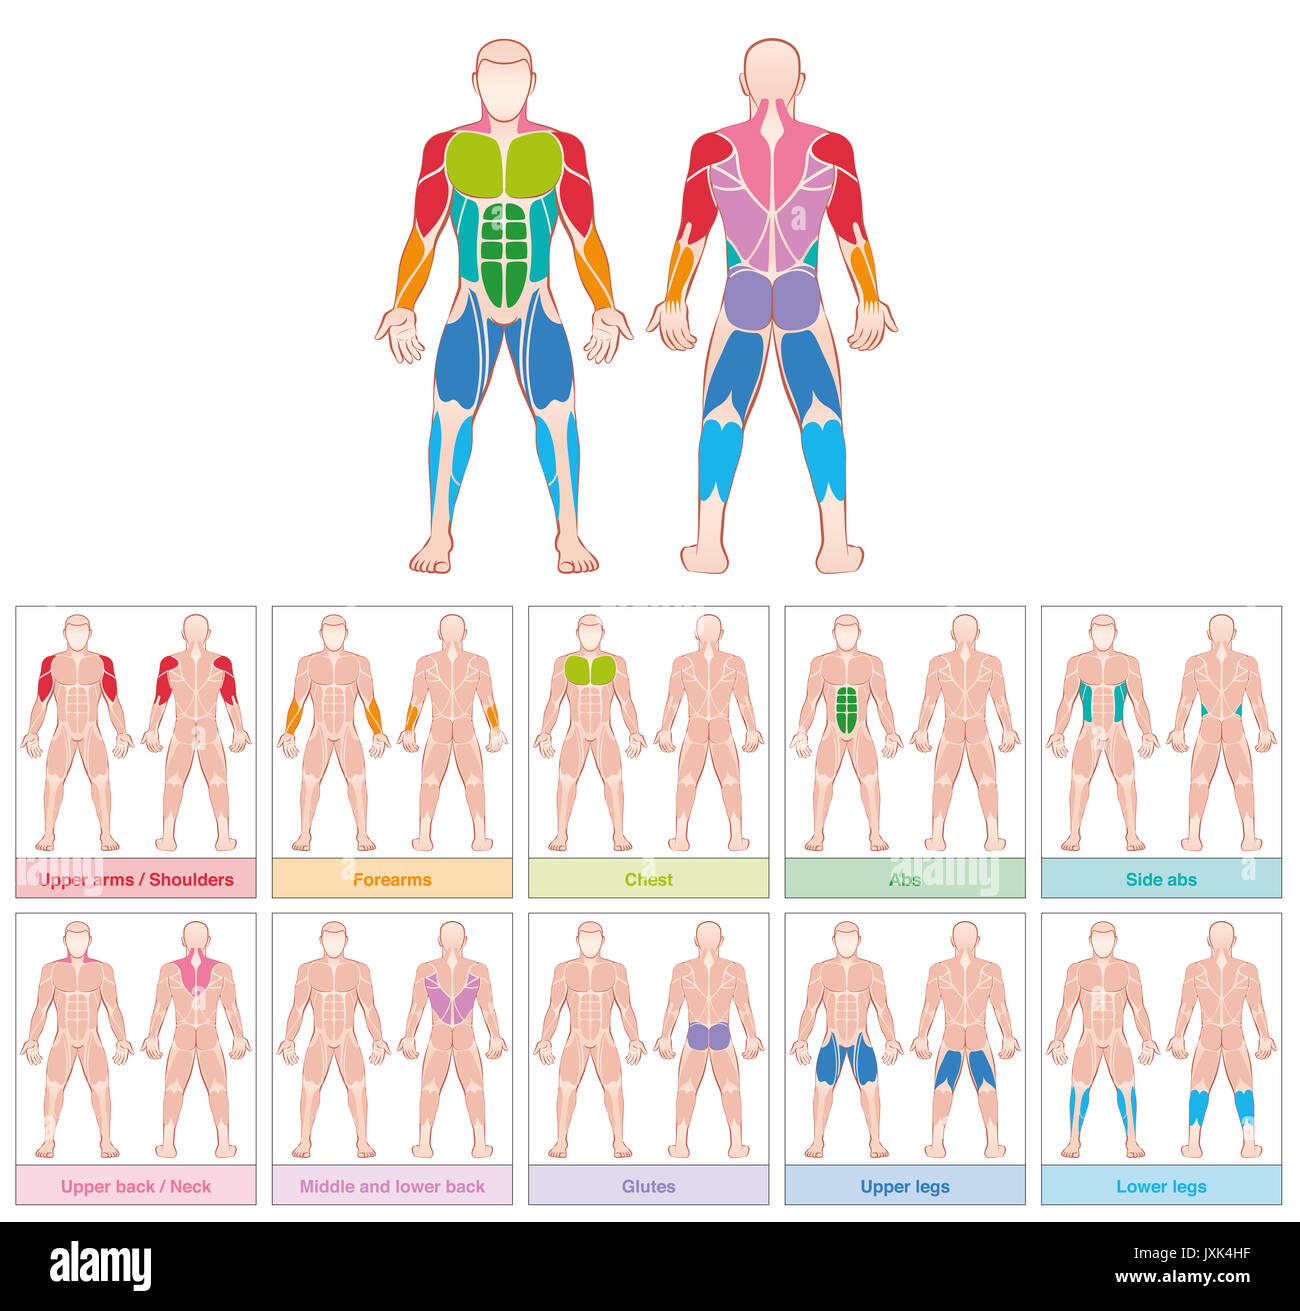 Gruppi muscolari - grafico con grandi muscoli umani - dieci colorate carte marcate - illustrazione su sfondo bianco. Foto Stock